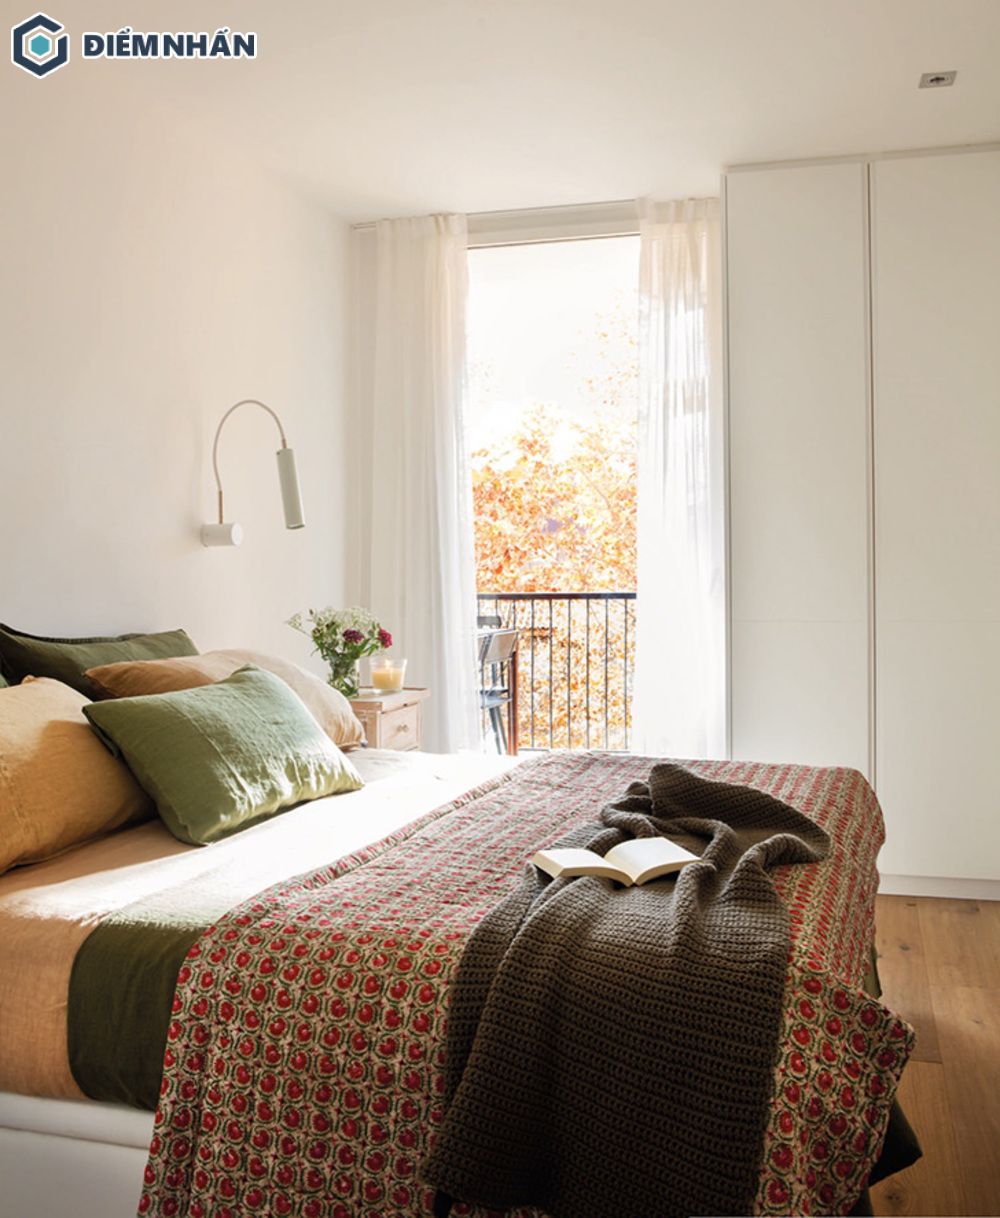 Phòng ngủ đơn giản với màu trắng và điểm nhấn là chiếc giường nhiều màu sắc